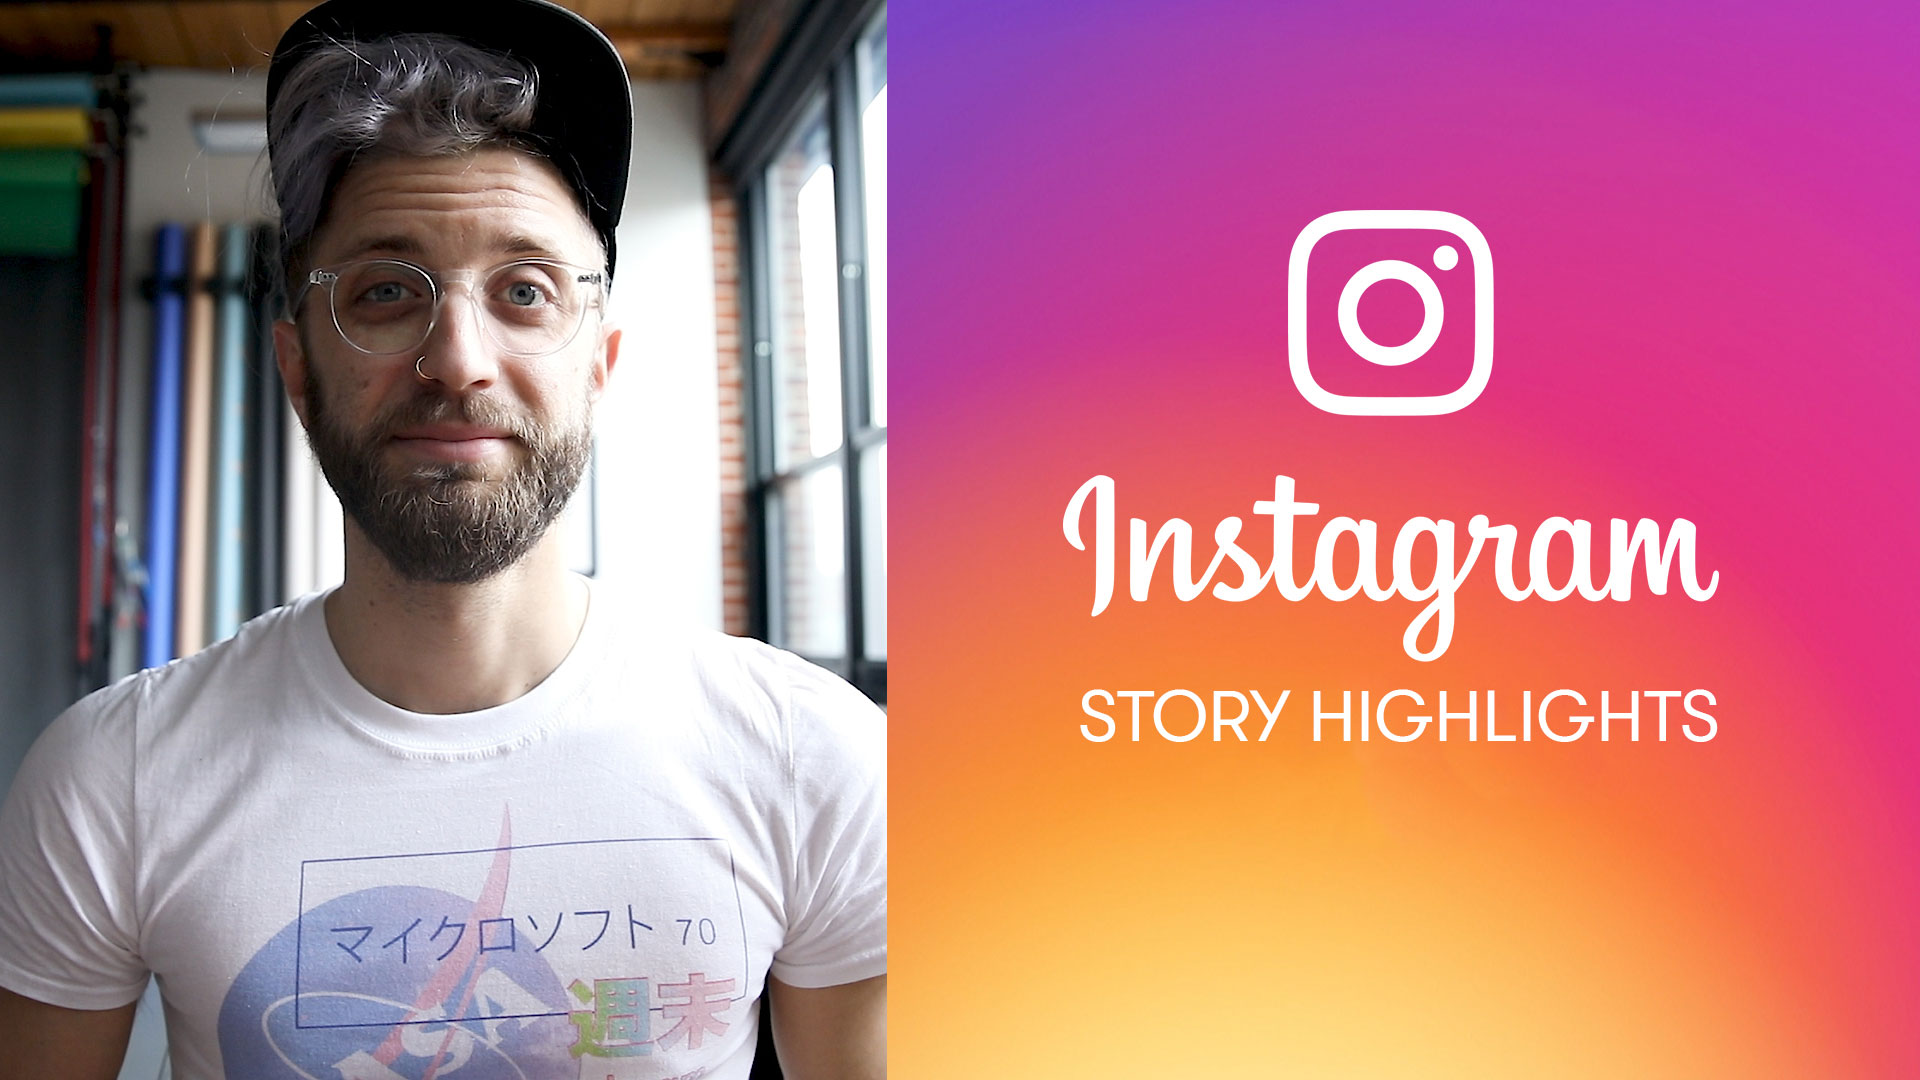 Uso de los aspectos destacados de la historia de Instagram para mostrar su negocio